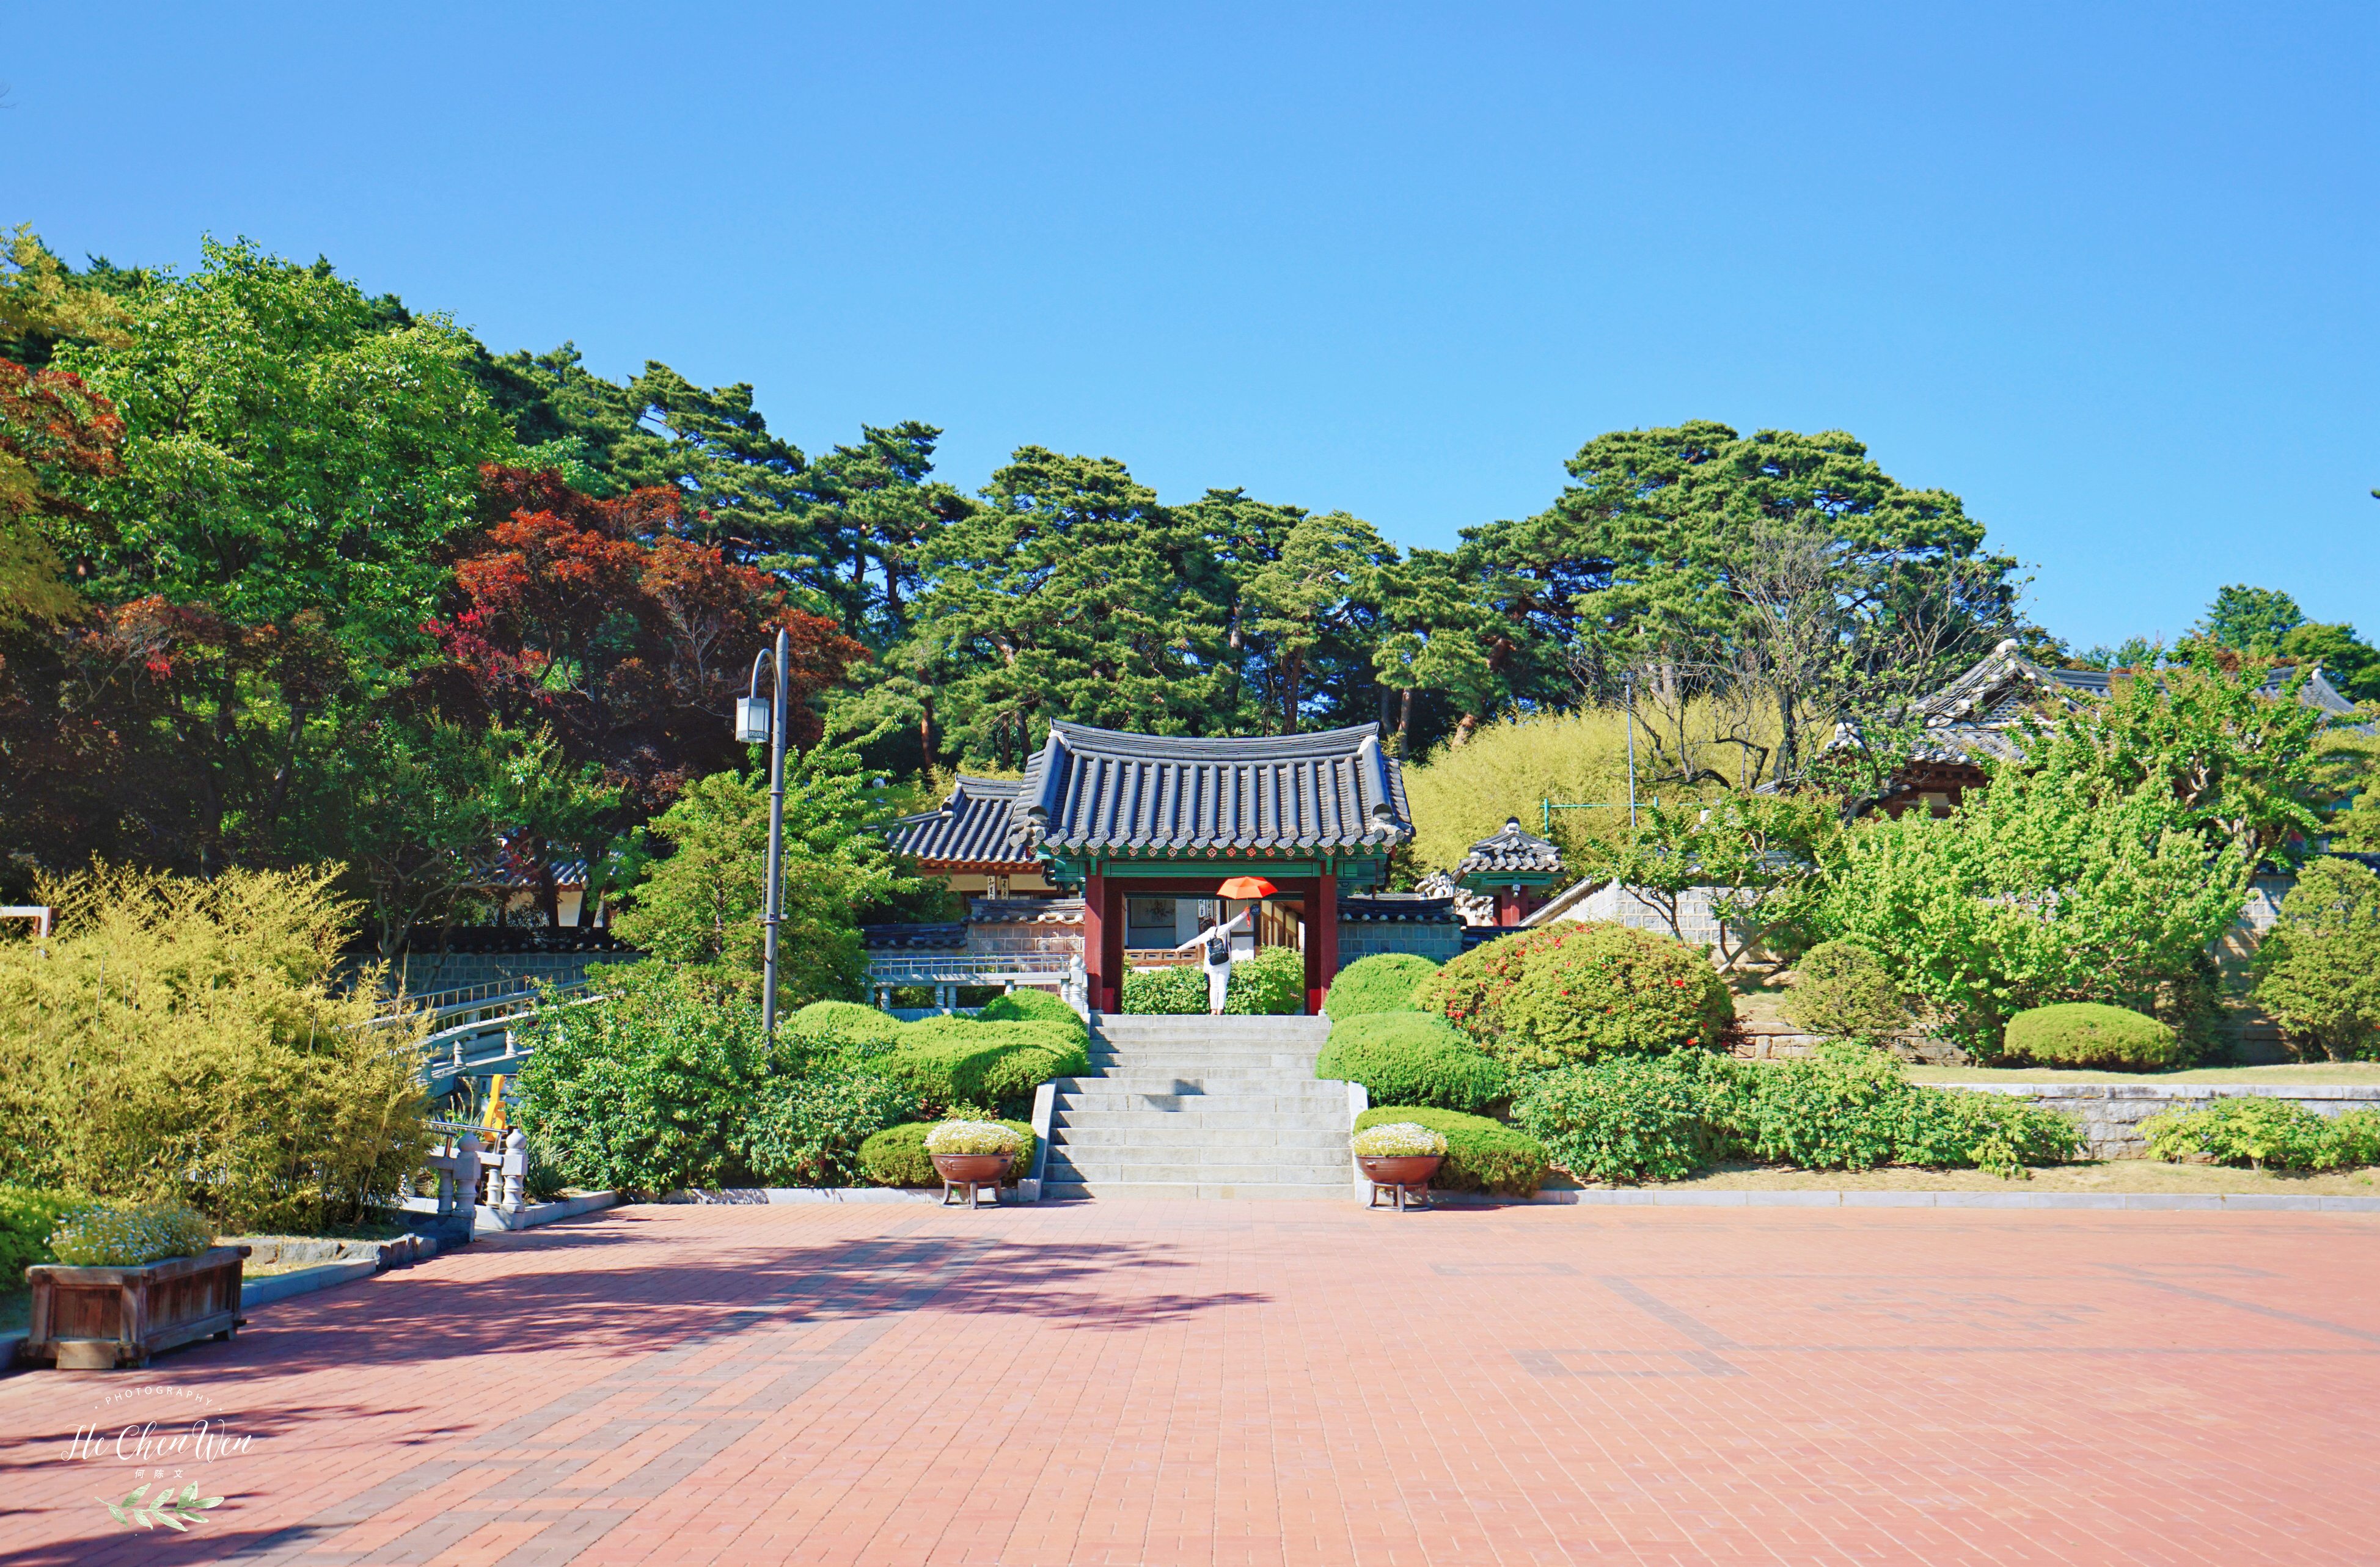 原创江原道著名景点韩国最贵女人的故居因遍布深色竹子得名